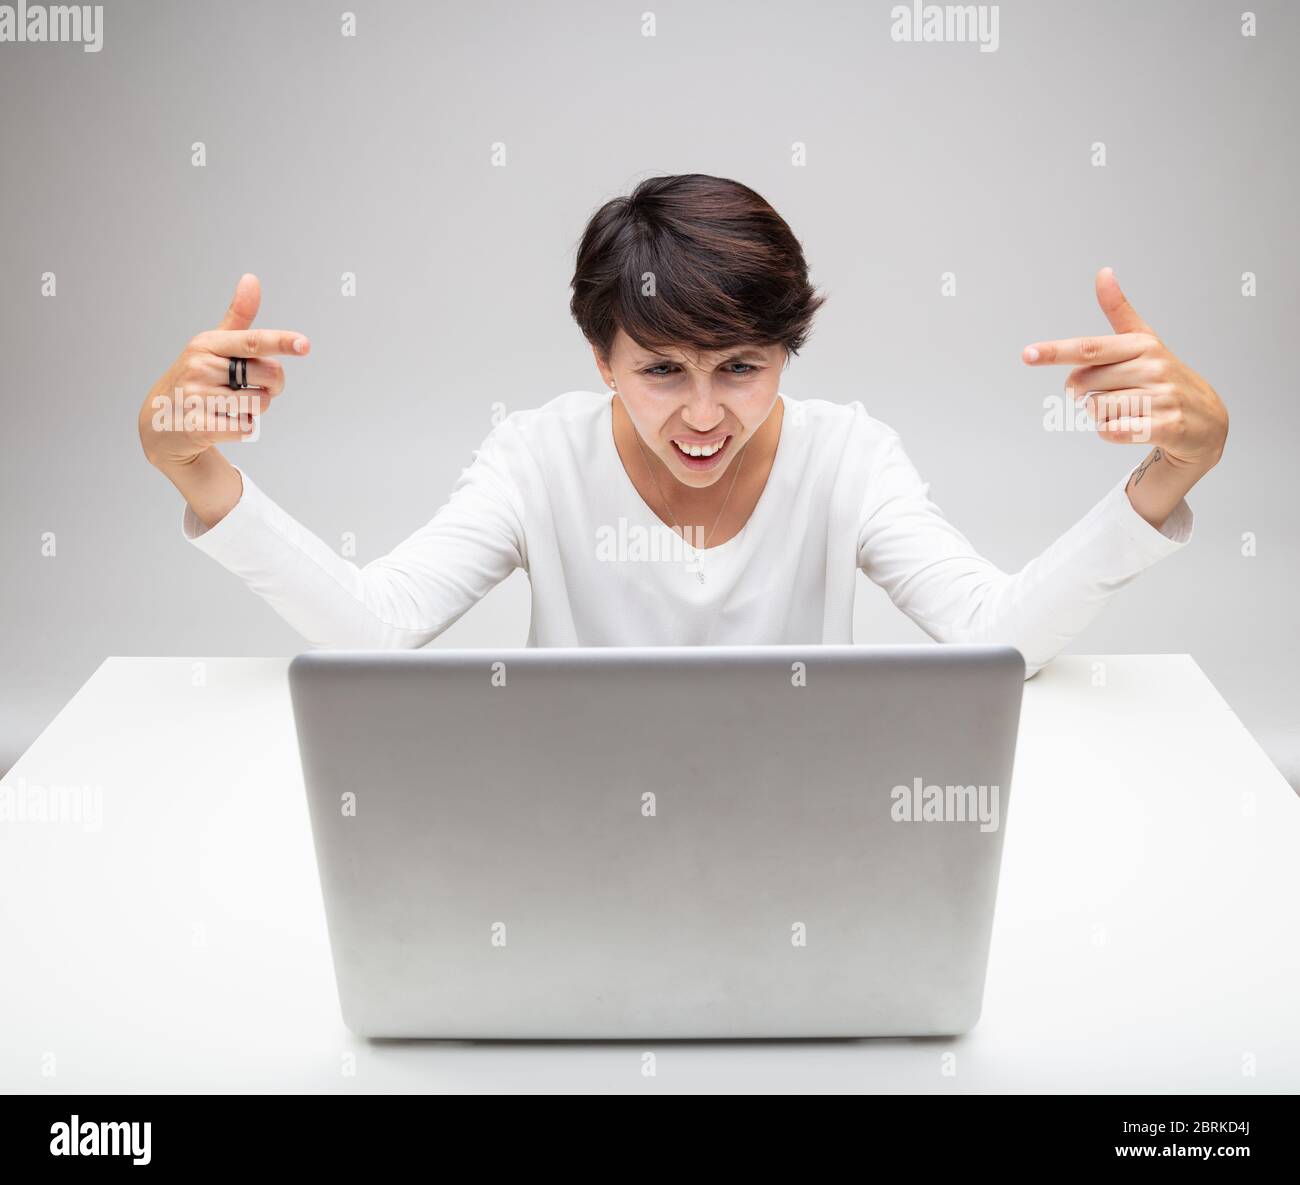 Verwirrt starrte Frau ungläubig auf ihren Laptop mit einem Grimassen und einem intensiven Blick, während sie mit ihren Fingern auf den Bildschirm über einem Grau zeigt Stockfoto